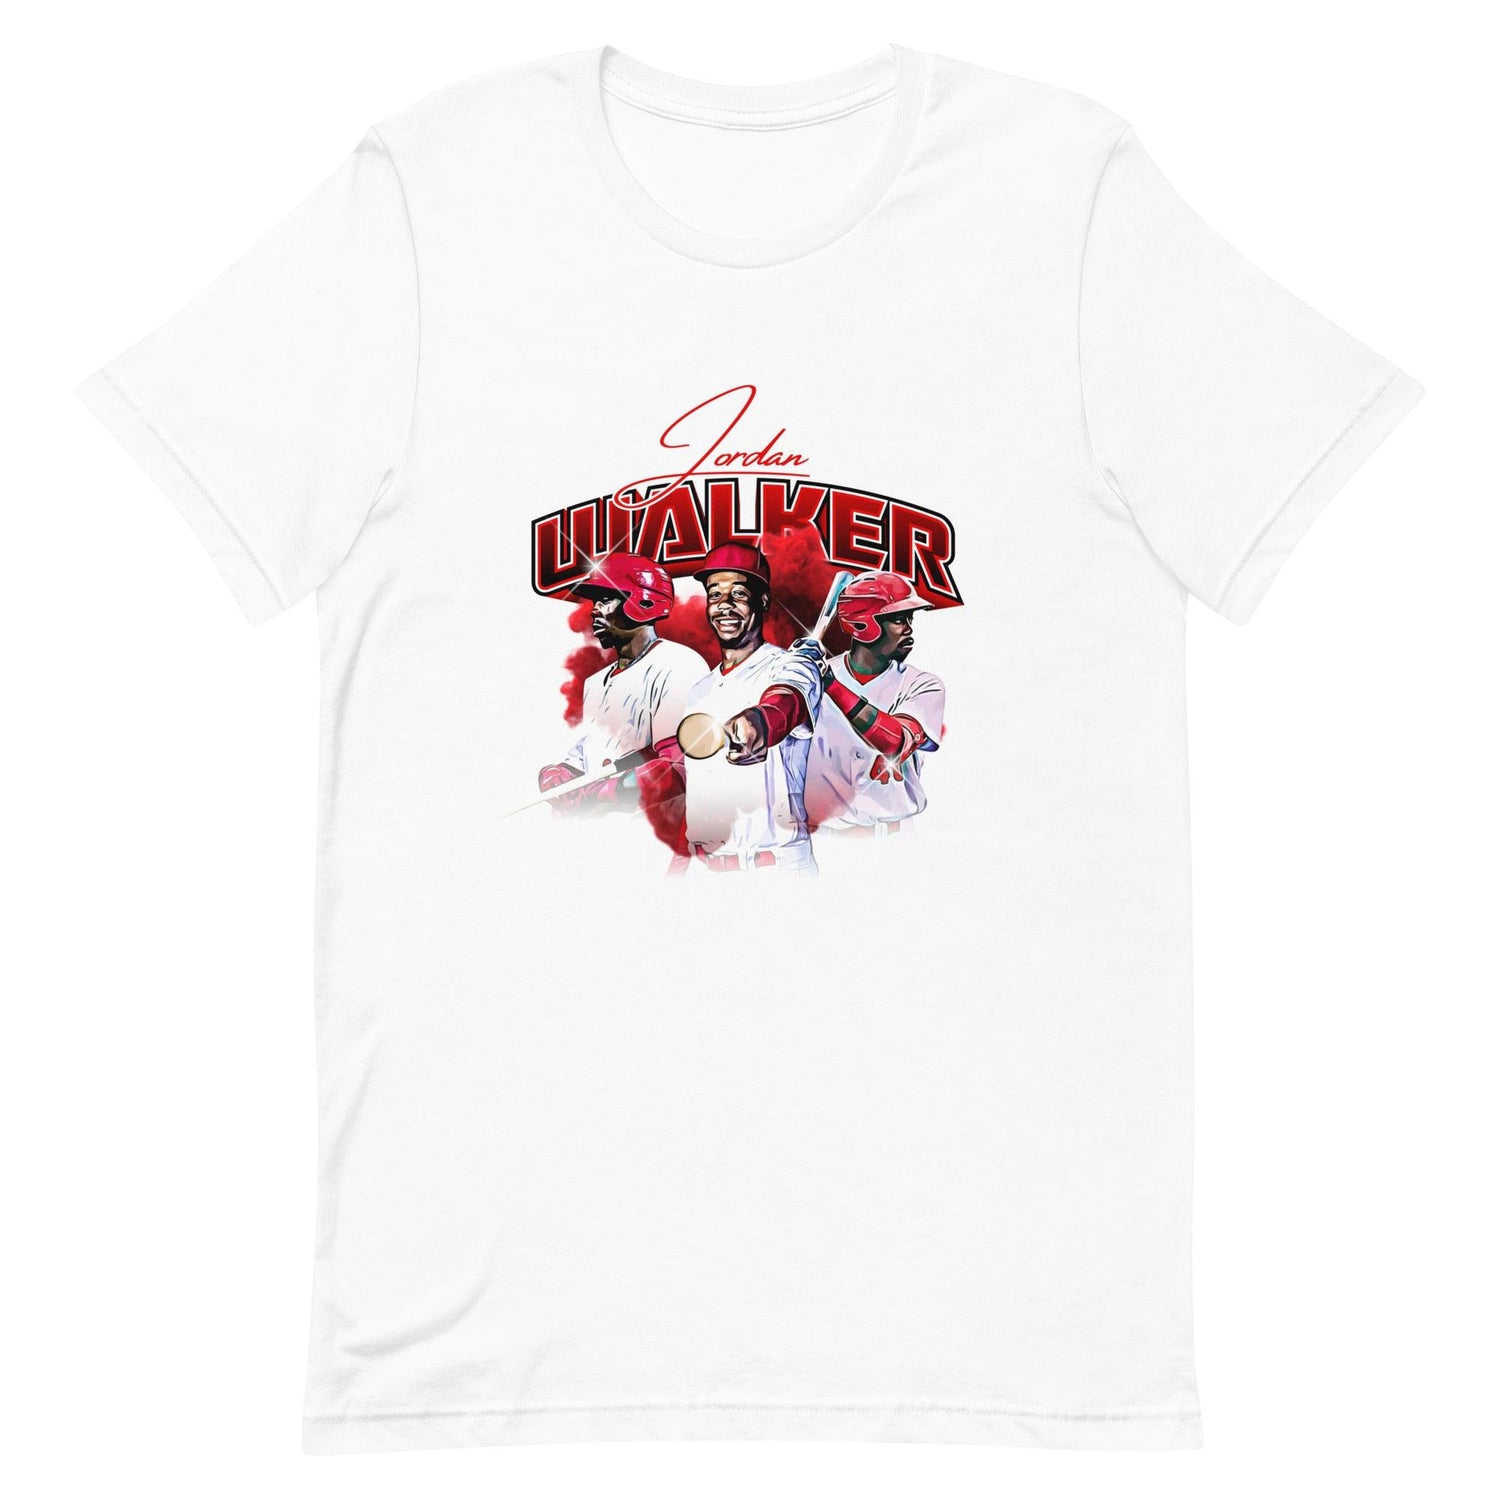 Jordan Walker “Essential” t-shirt - Fan Arch